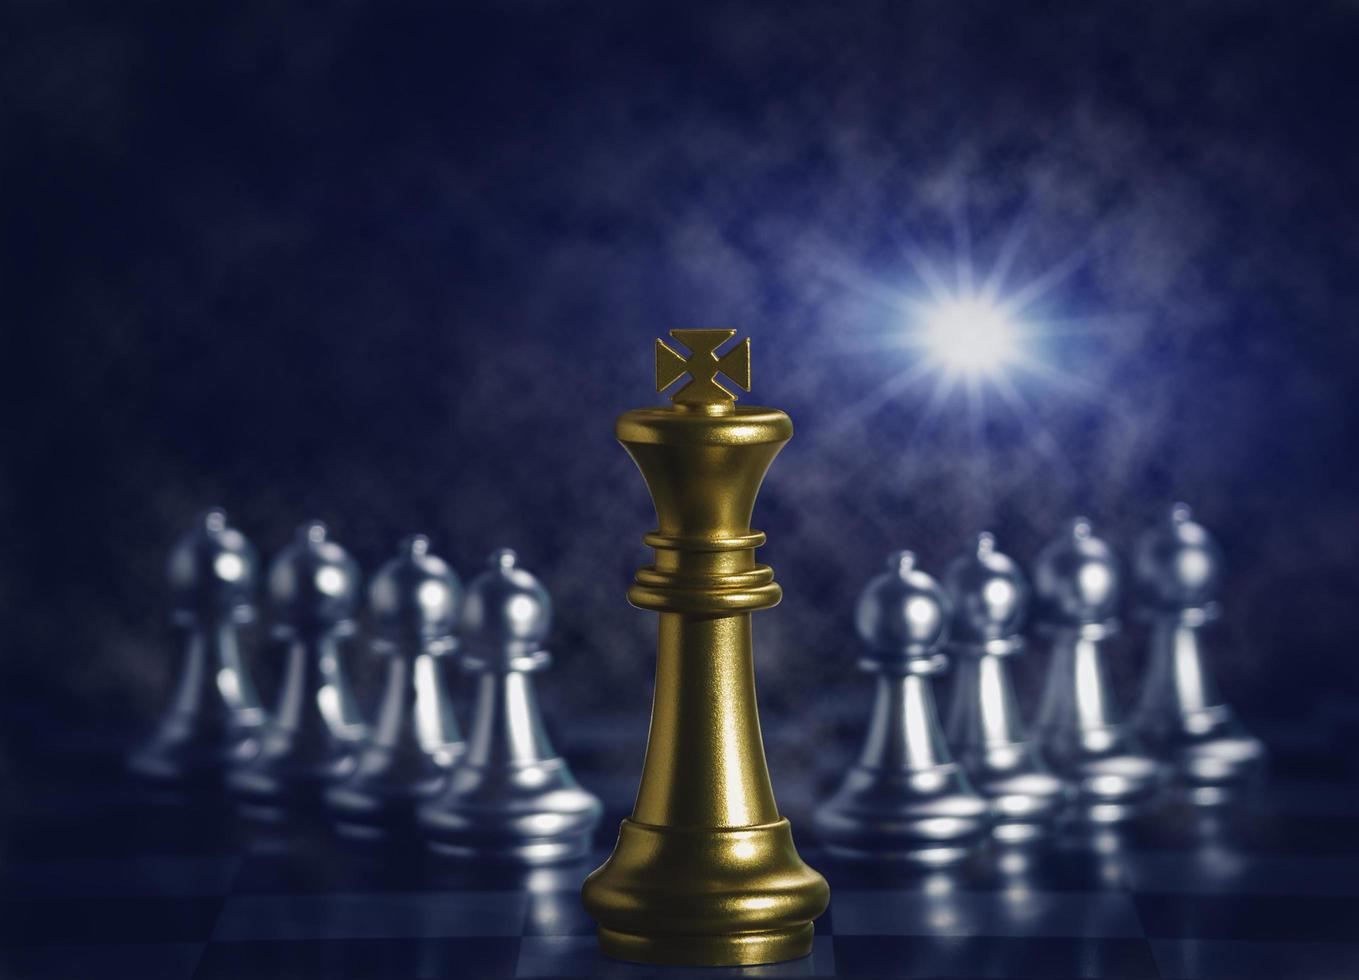 golden king chess omges av att falla runt silverschackpjäser för att slåss med lagarbete till seger, affärsstrategikoncept och ledar- och lagarbeteskoncept för framgång. foto